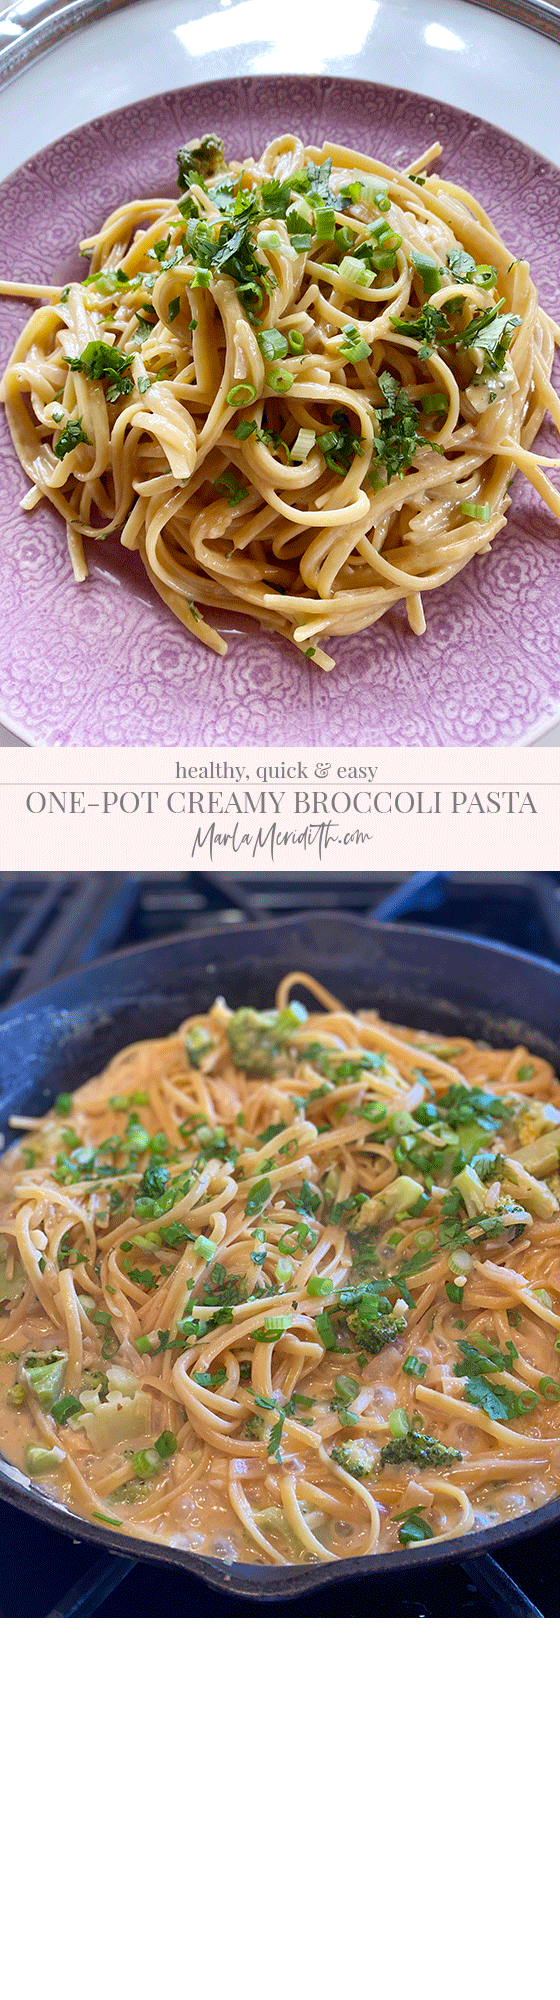 One-Pot Creamy Broccoli Pasta Recipe